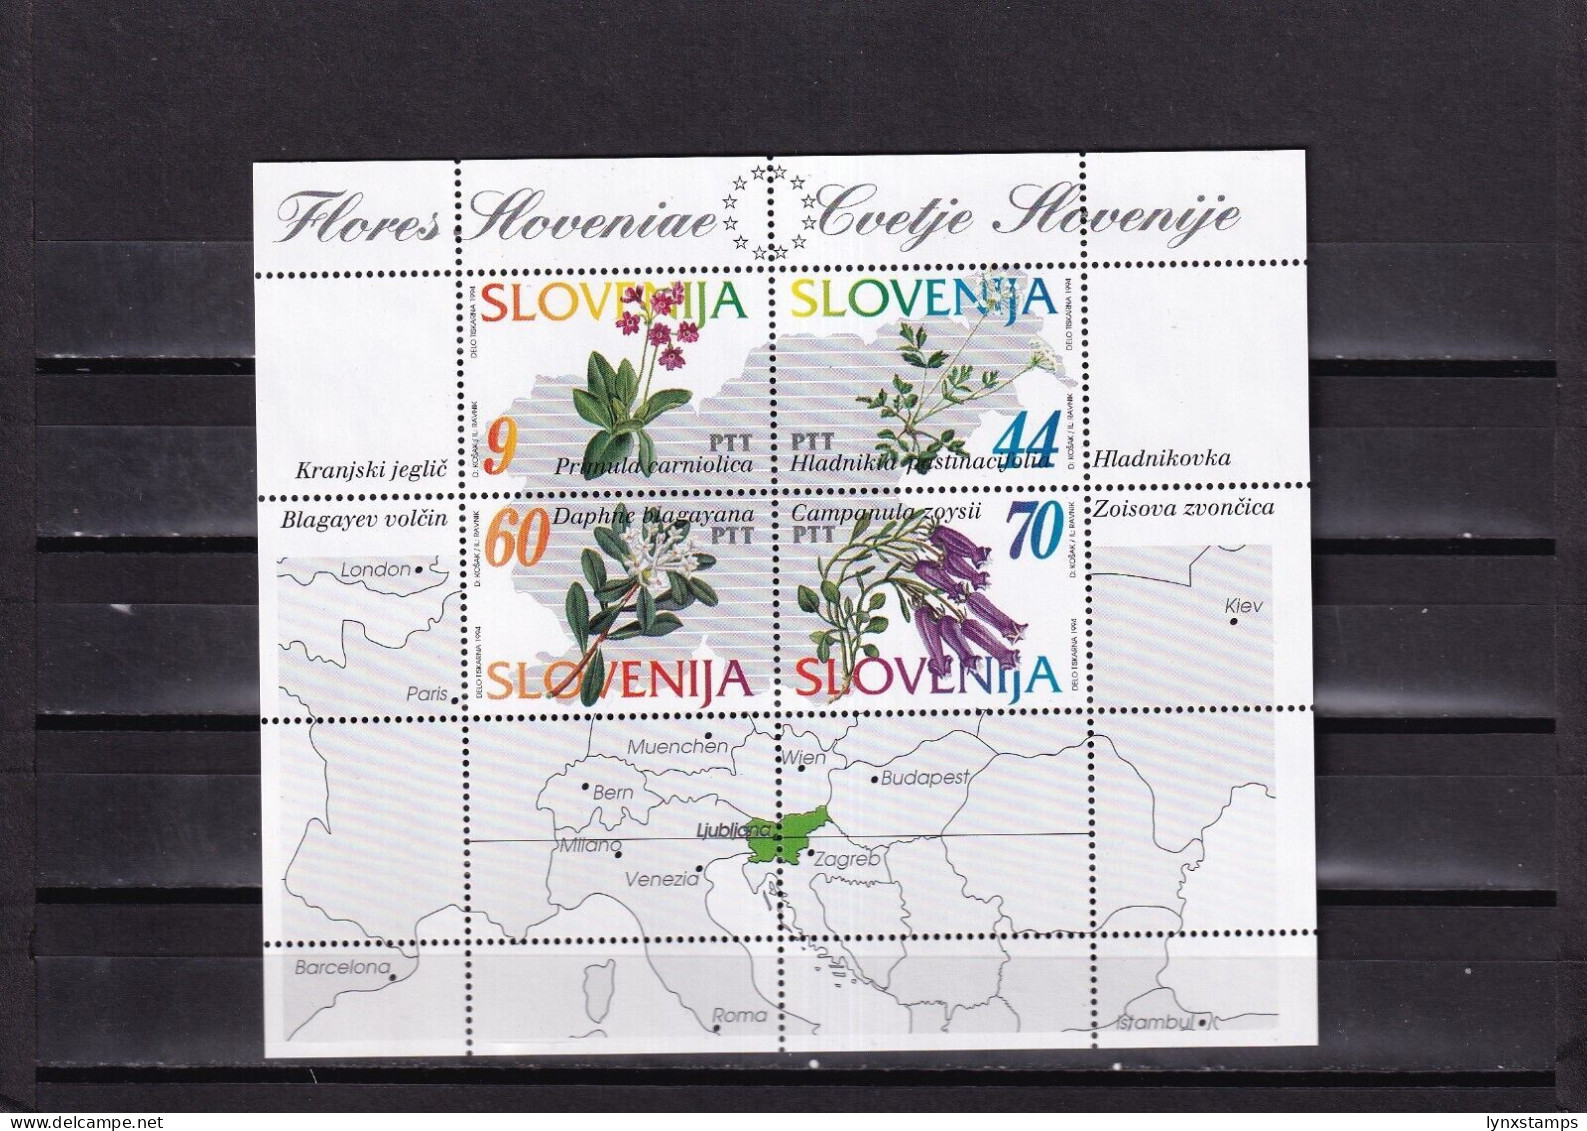 ER04 Slovenia 1994 Flowers Of Slovenia MNH Souvenir Sheet - Eslovenia